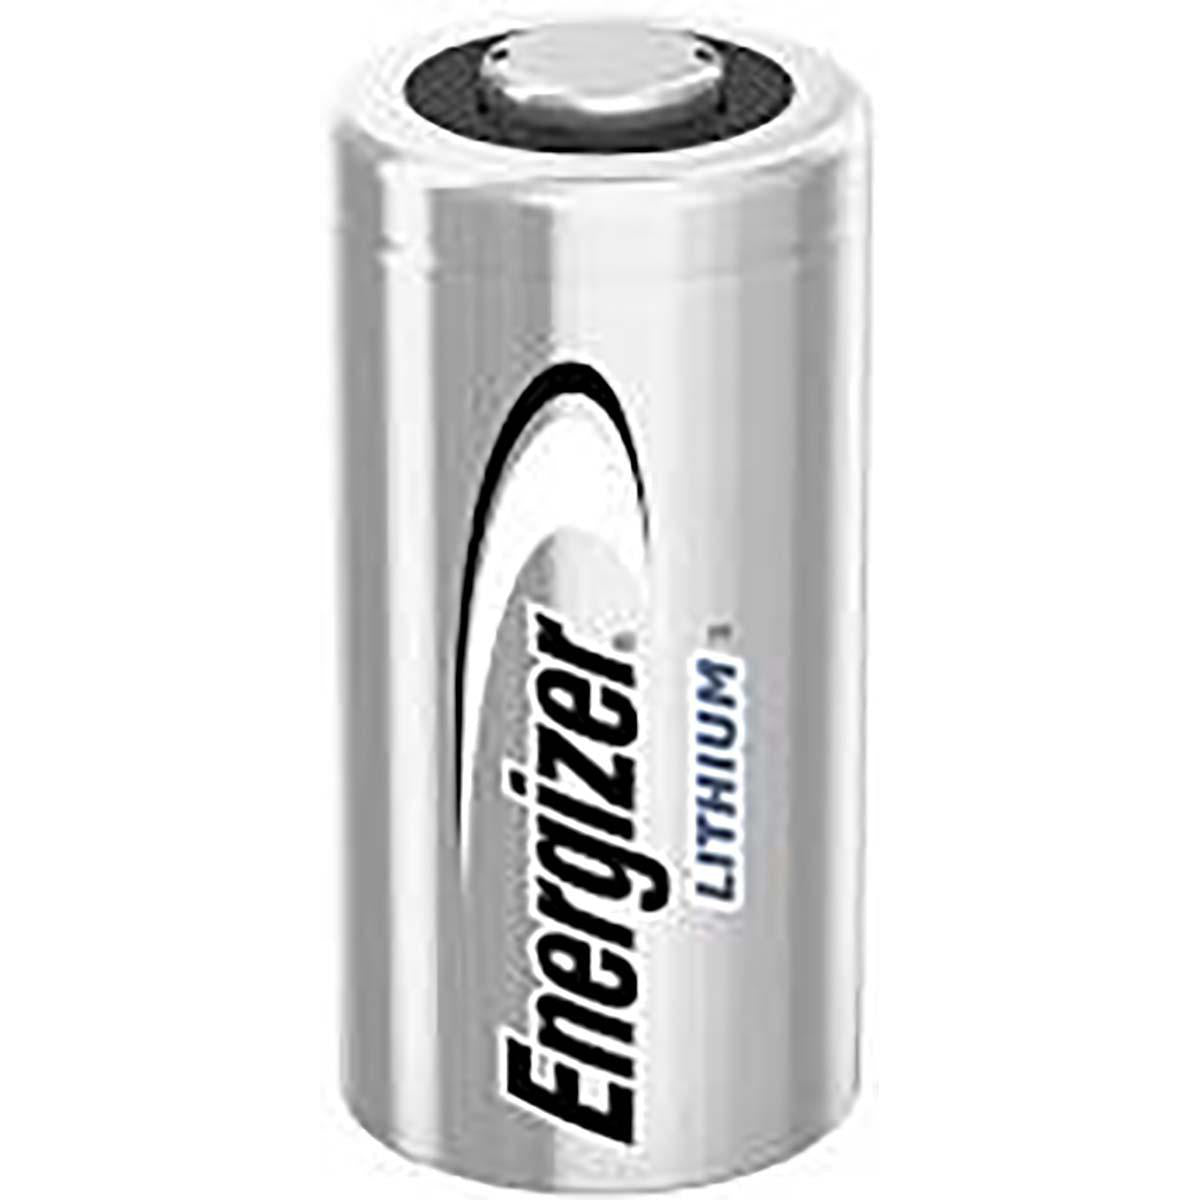 Lithiumthionylchlorid Batterie ER14505 | 3 V DC | 1500 mAh | 1-Blister | Silber